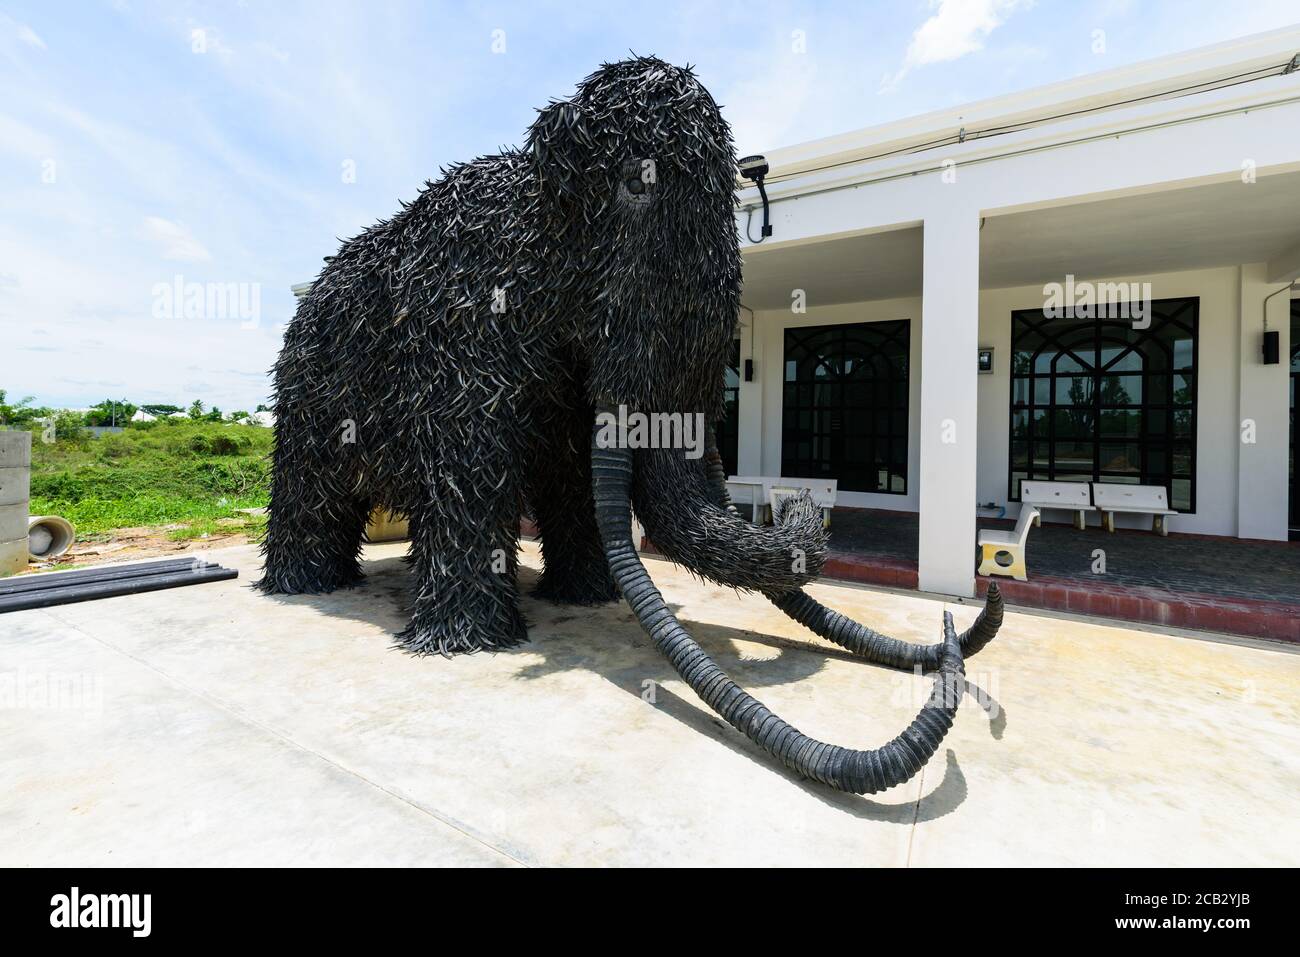 NakhonPathom , Thaïlande - 6 août, 2020 : le modèle de recyclage Big Mammoth fabriqué à partir de vieux pneus de voiture dans la station-service Caltex à NakhonPathom KM.14 Banque D'Images